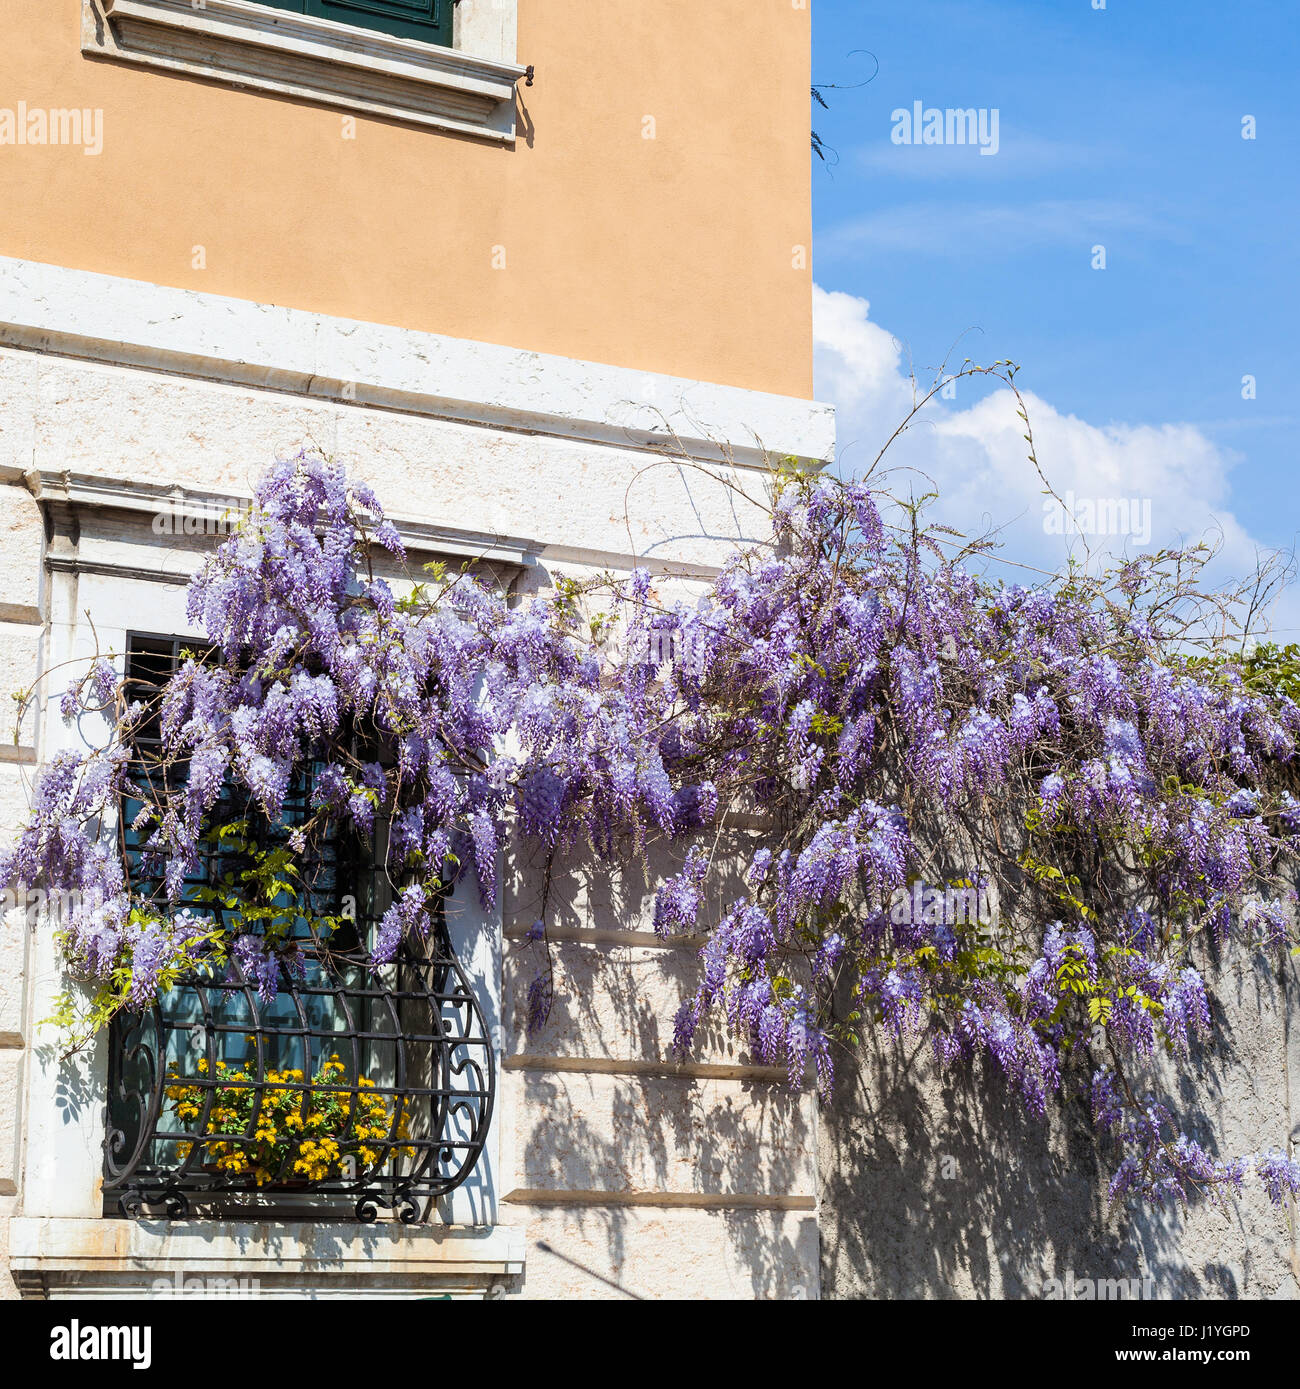 Voyage d'Italie - floraison plante glycine sur mur de maison urbaine dans la ville de Vérone au printemps Banque D'Images